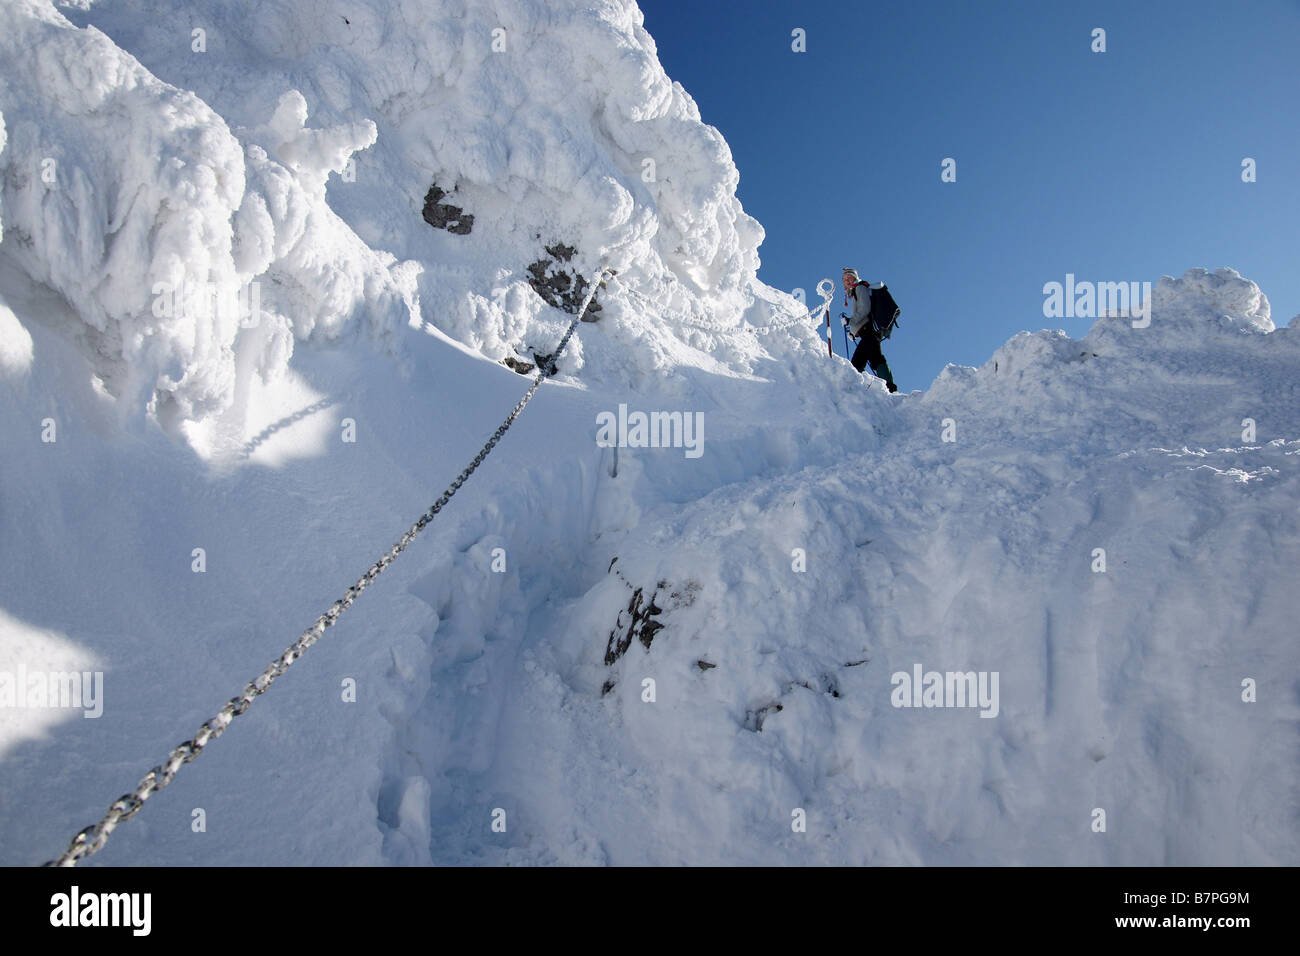 Winter im Choc Berge, Kette via Ferrata Mädchen zu Fuß in riesigen Schnee  auf den Gipfel des Mt. Choc, Slowakei Stockfotografie - Alamy